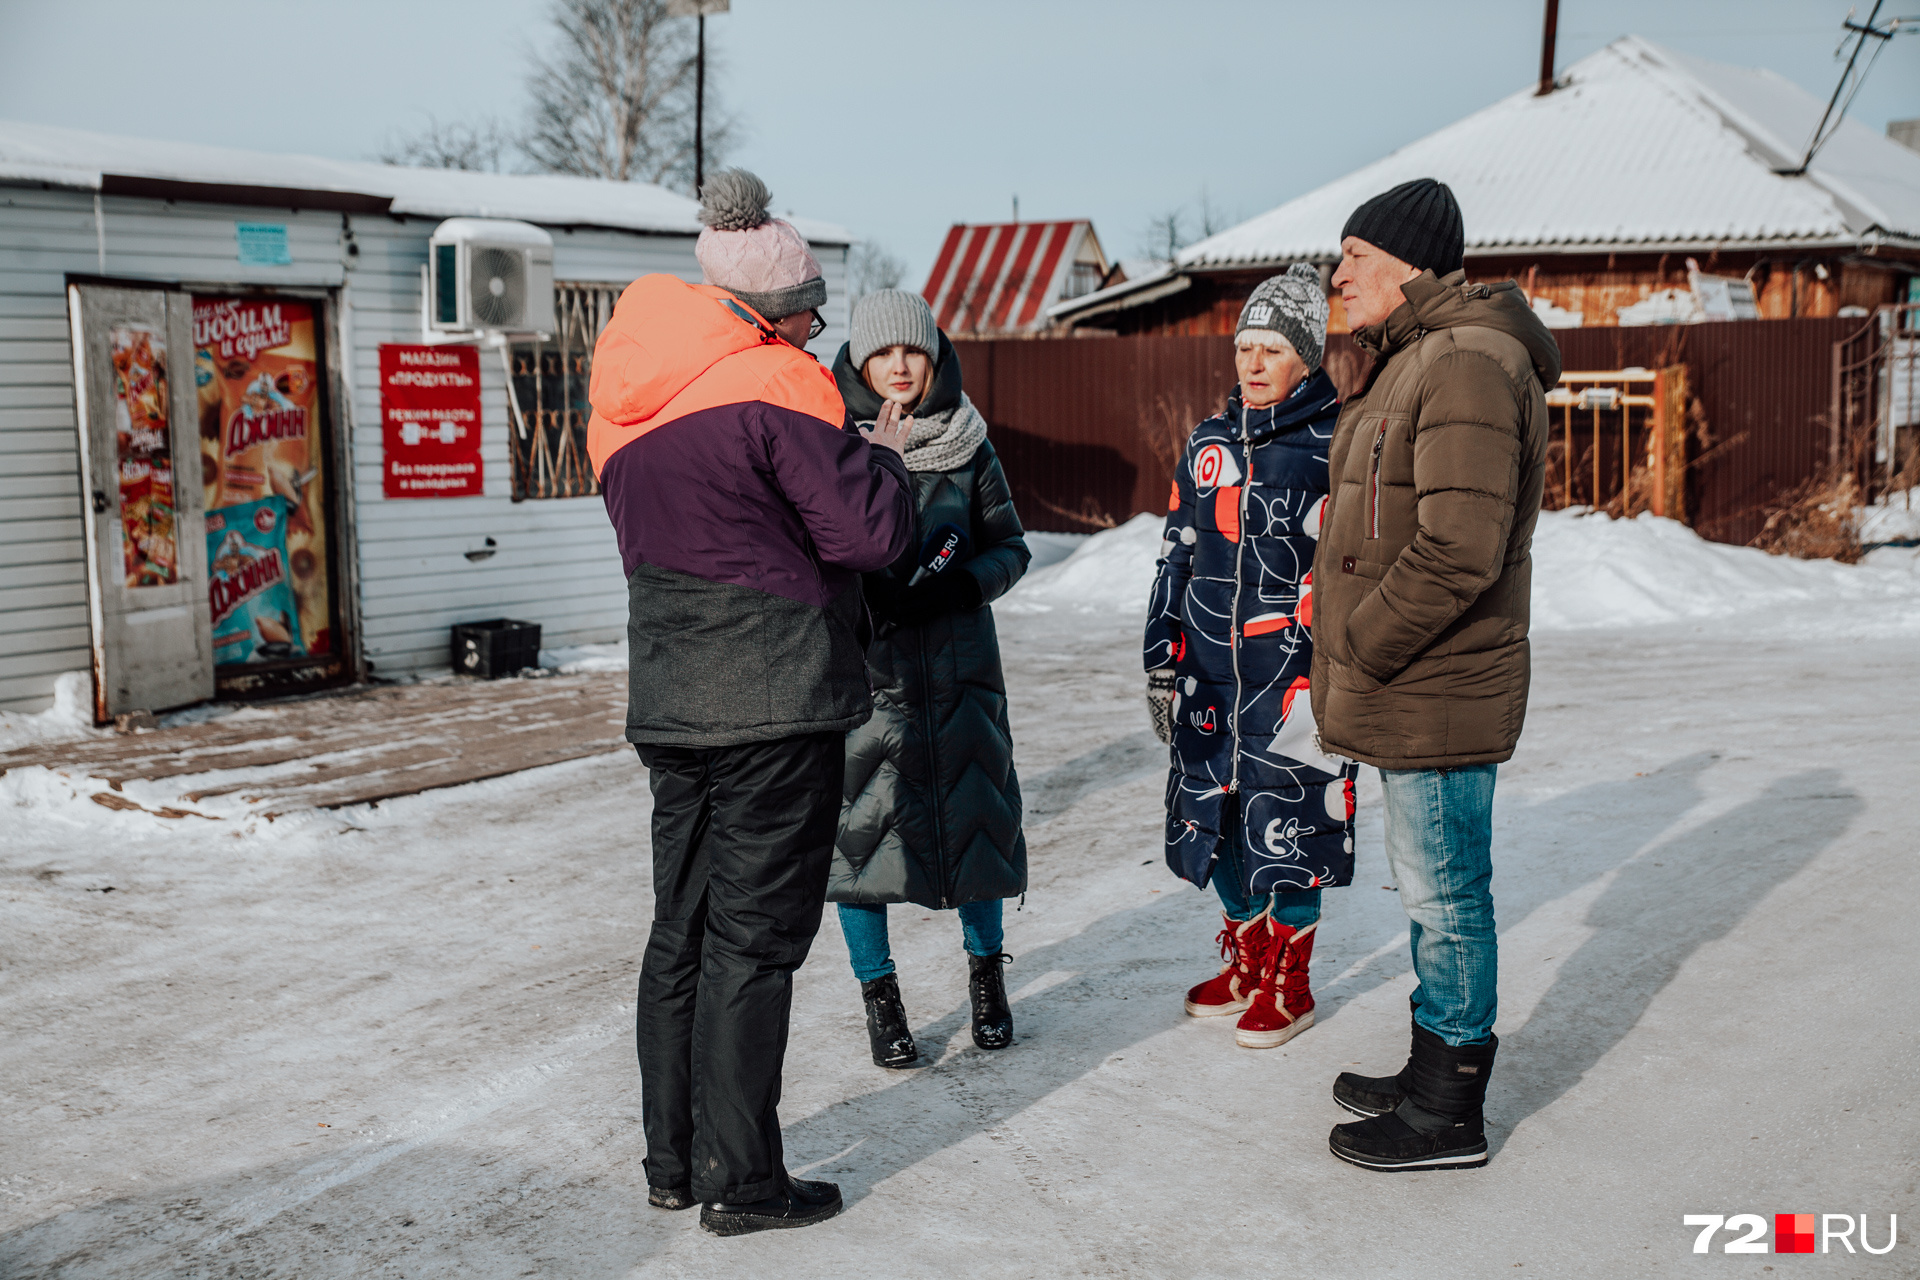 На встрече с журналистами местные жители высказали сильное беспокойство о том, что будет с их СНТ весной, когда снег начнет таять